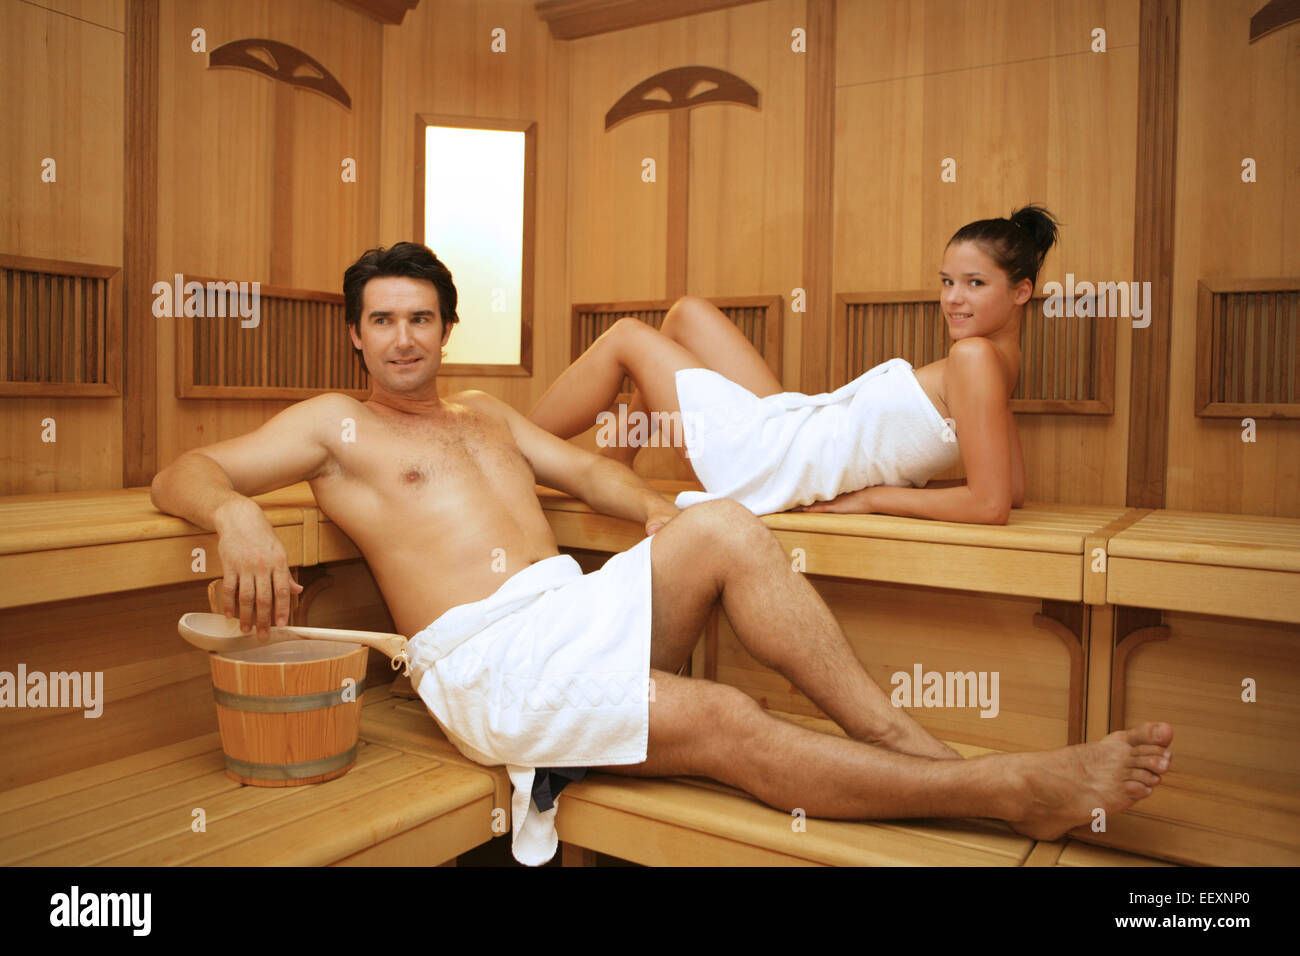 Sauna Frau Mann Paar Nackt Entspannung Saunabesuch Finnisches Bad Heissluft...